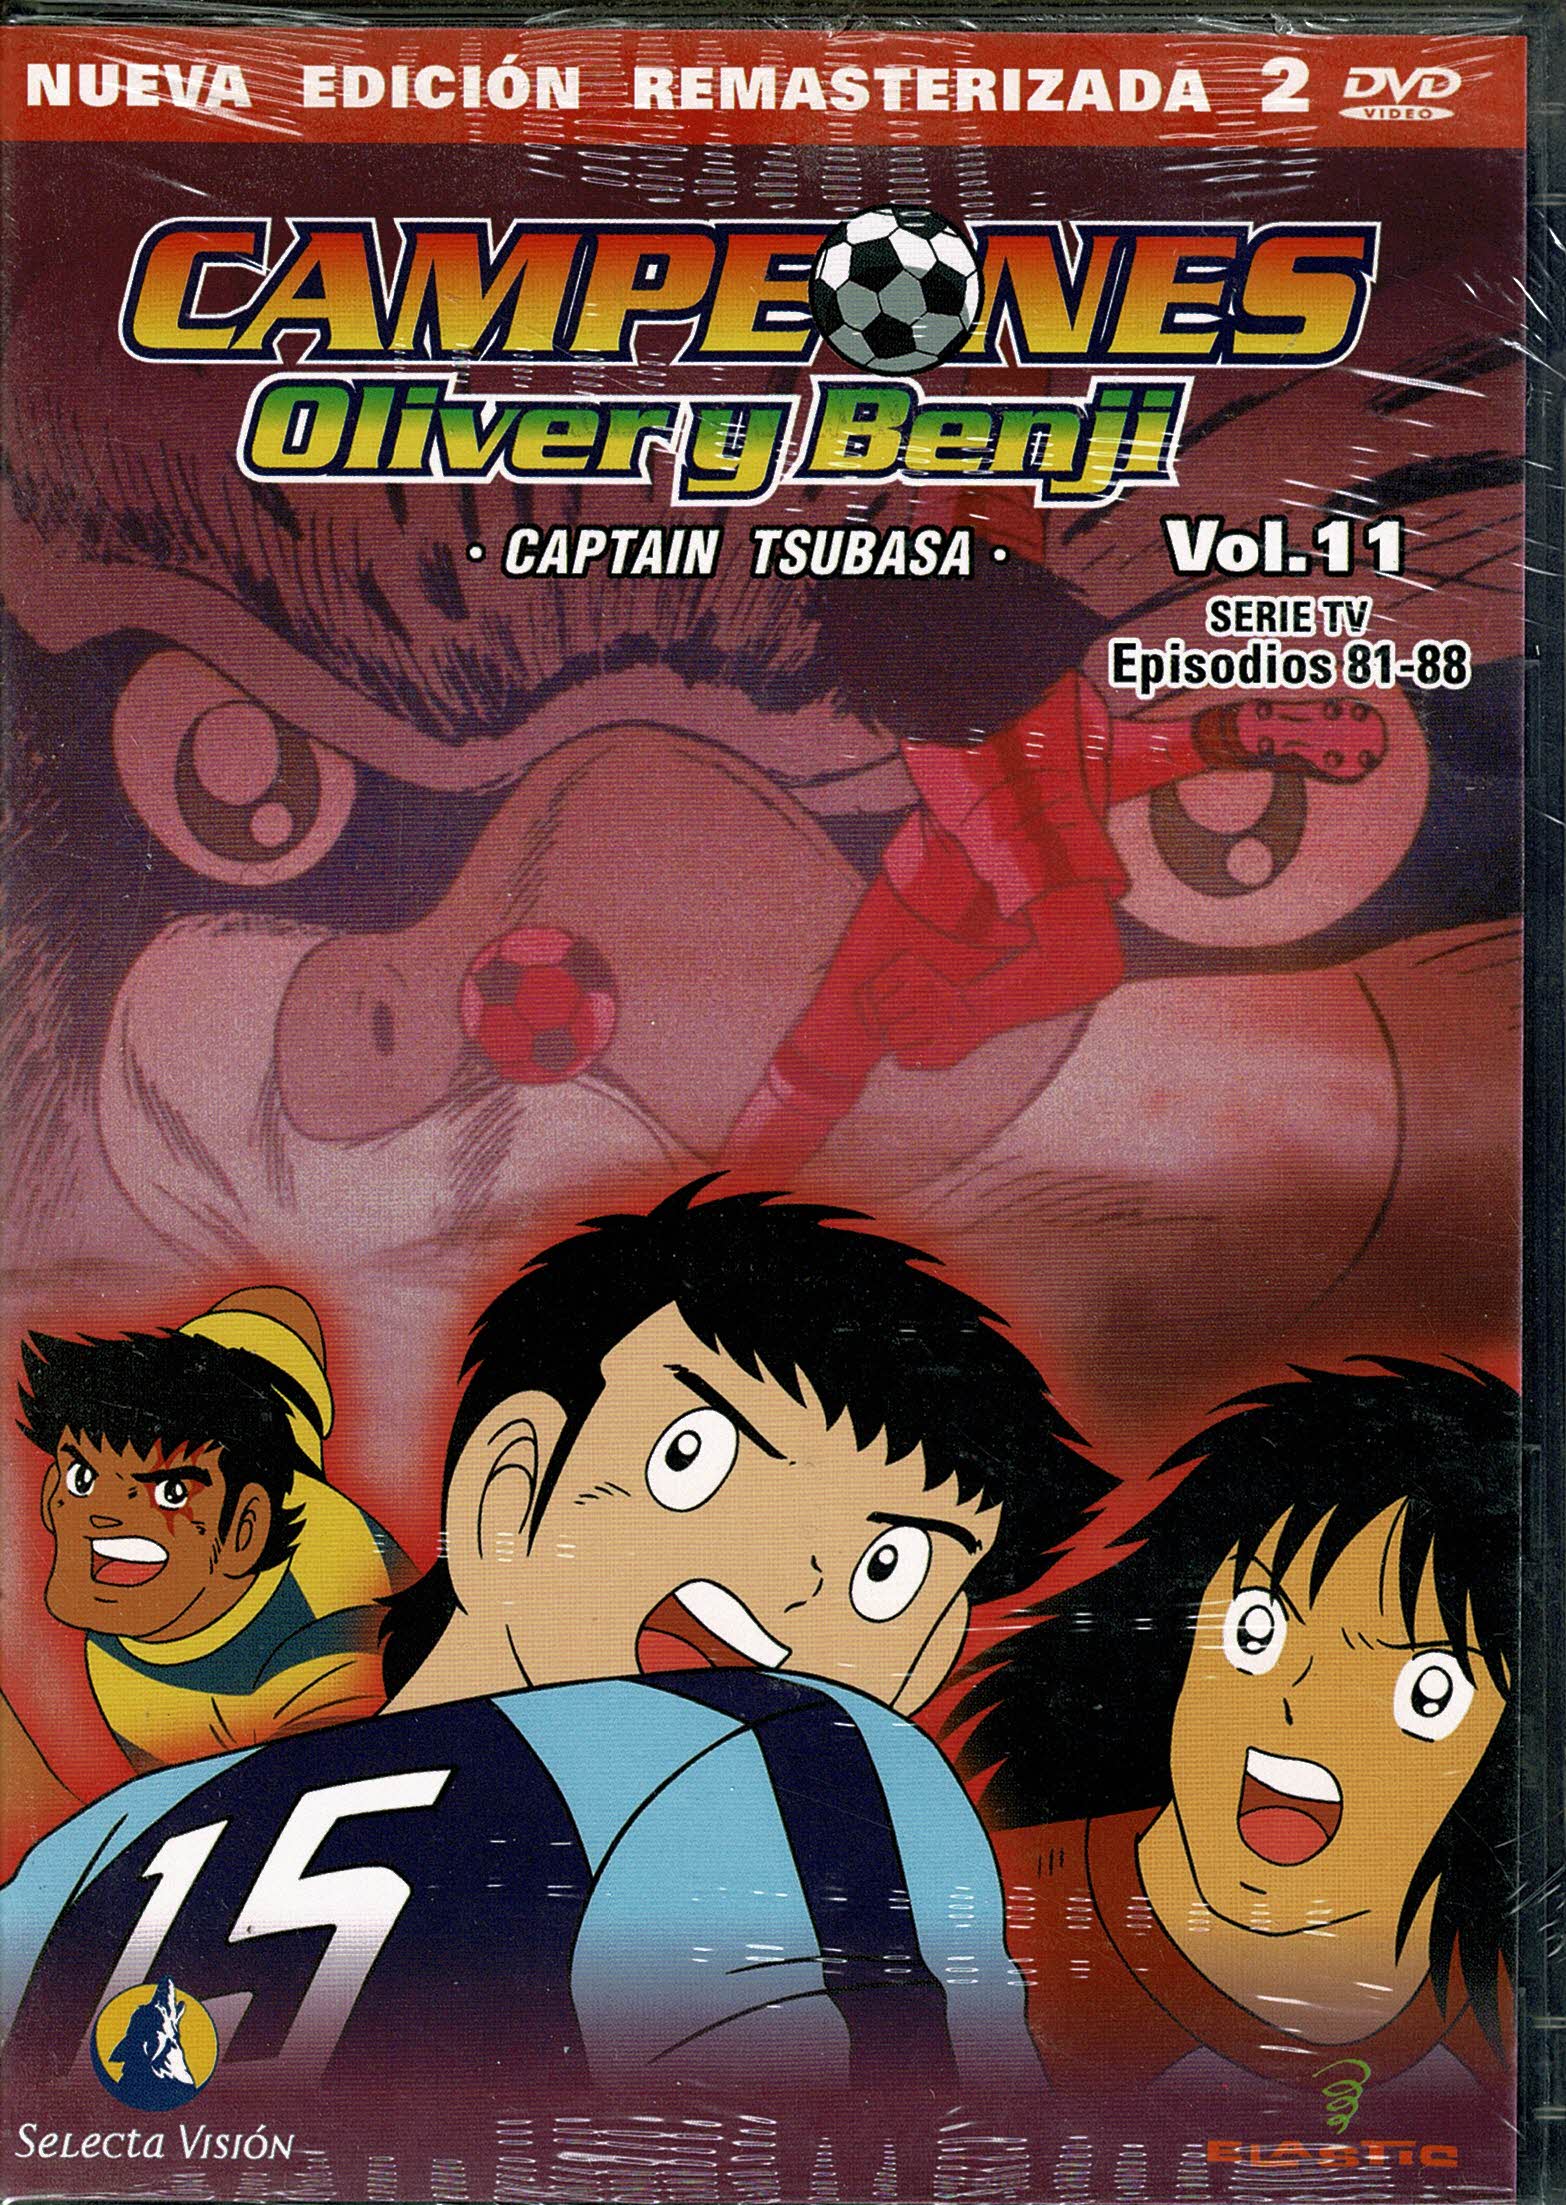 Campeones Oliver y Benji *captain tsubasa* Vol 11 Episodios  81-88